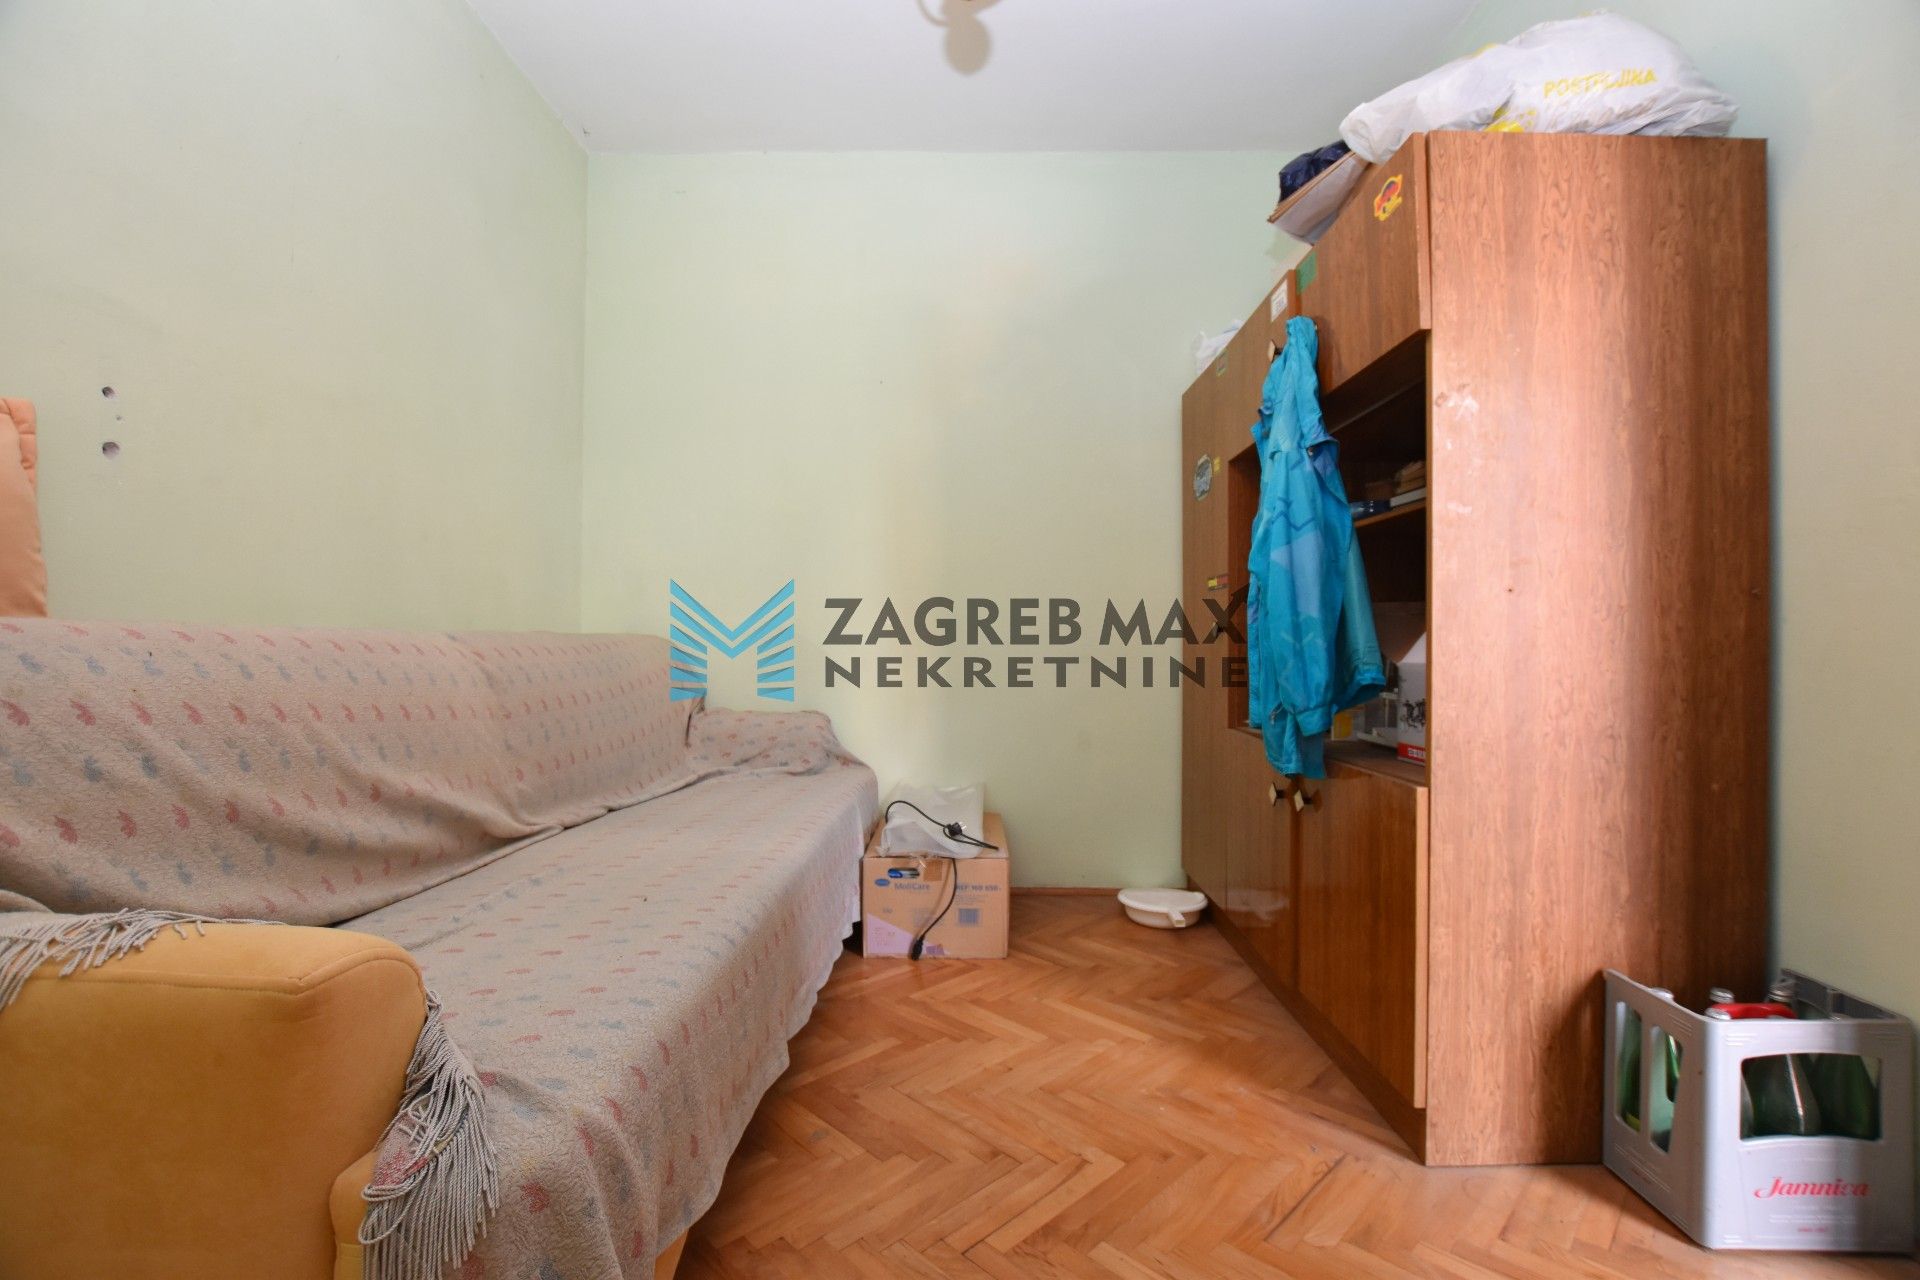 Zagreb - ŠIBENIK Baldekin 3, obiteljska kuća 200 m2, 3 odvojena stana, odlična lokacija, garaža, parking